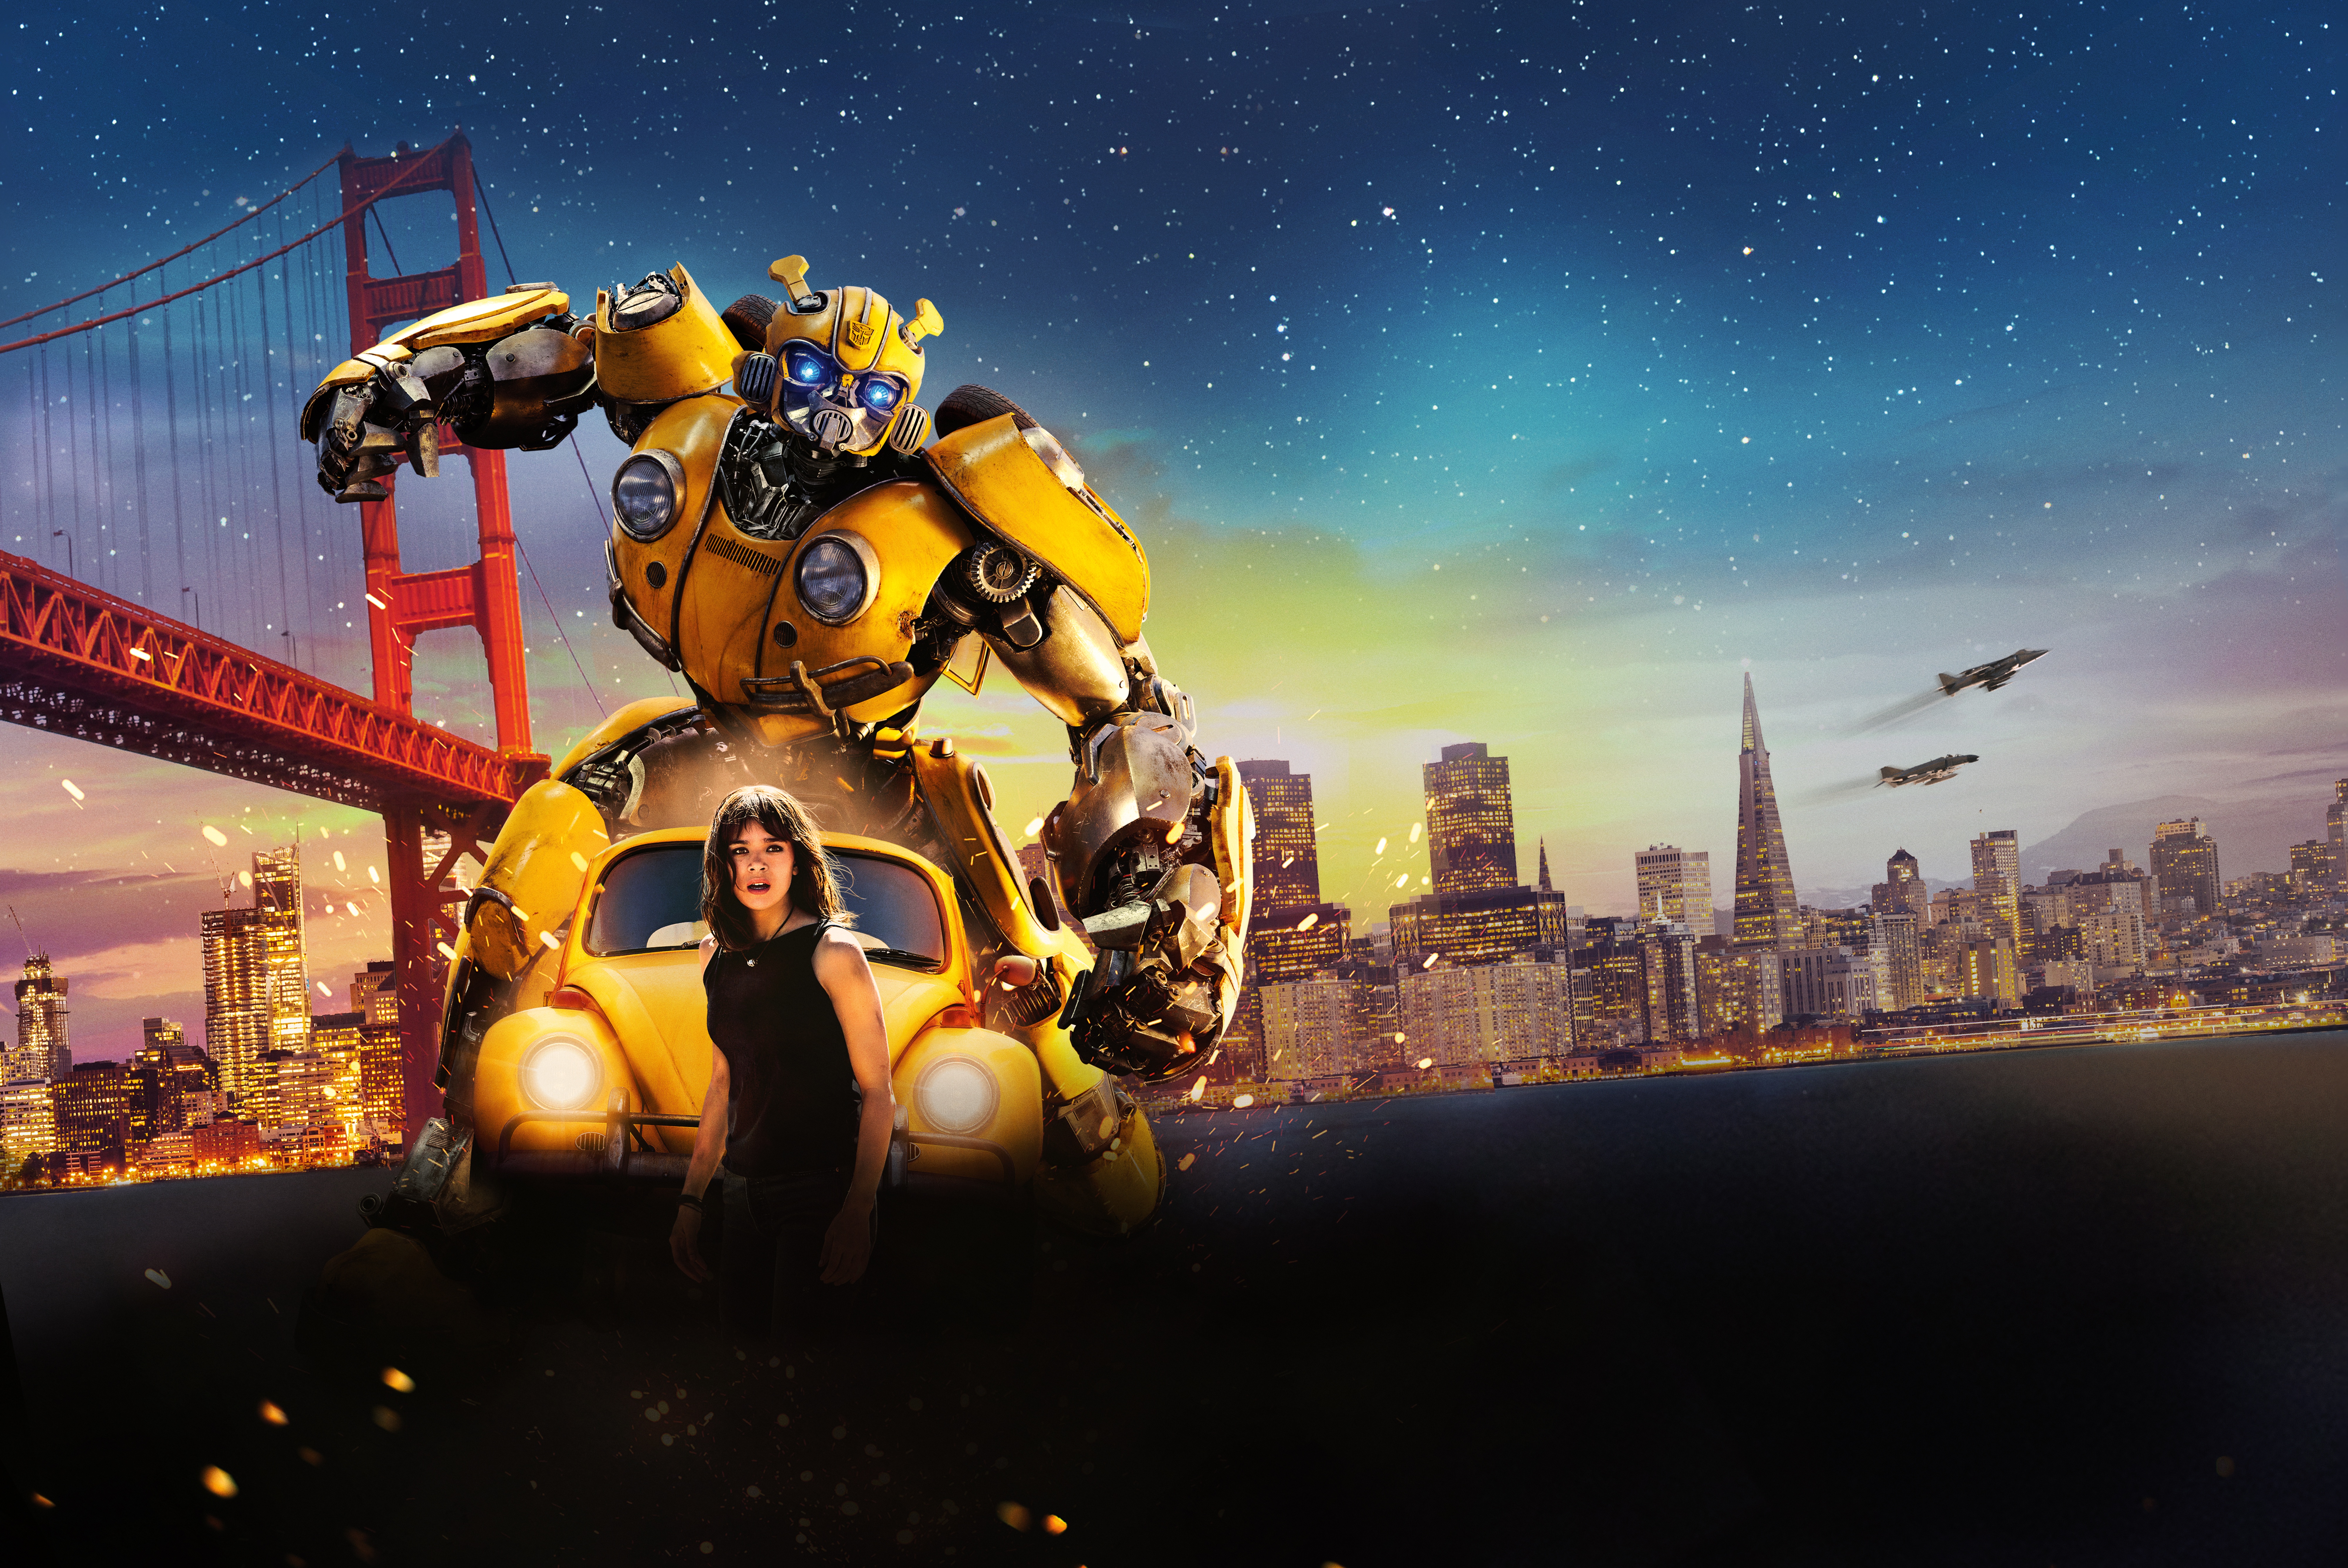 bumblebee (transformers), movie, bumblebee, hailee steinfeld